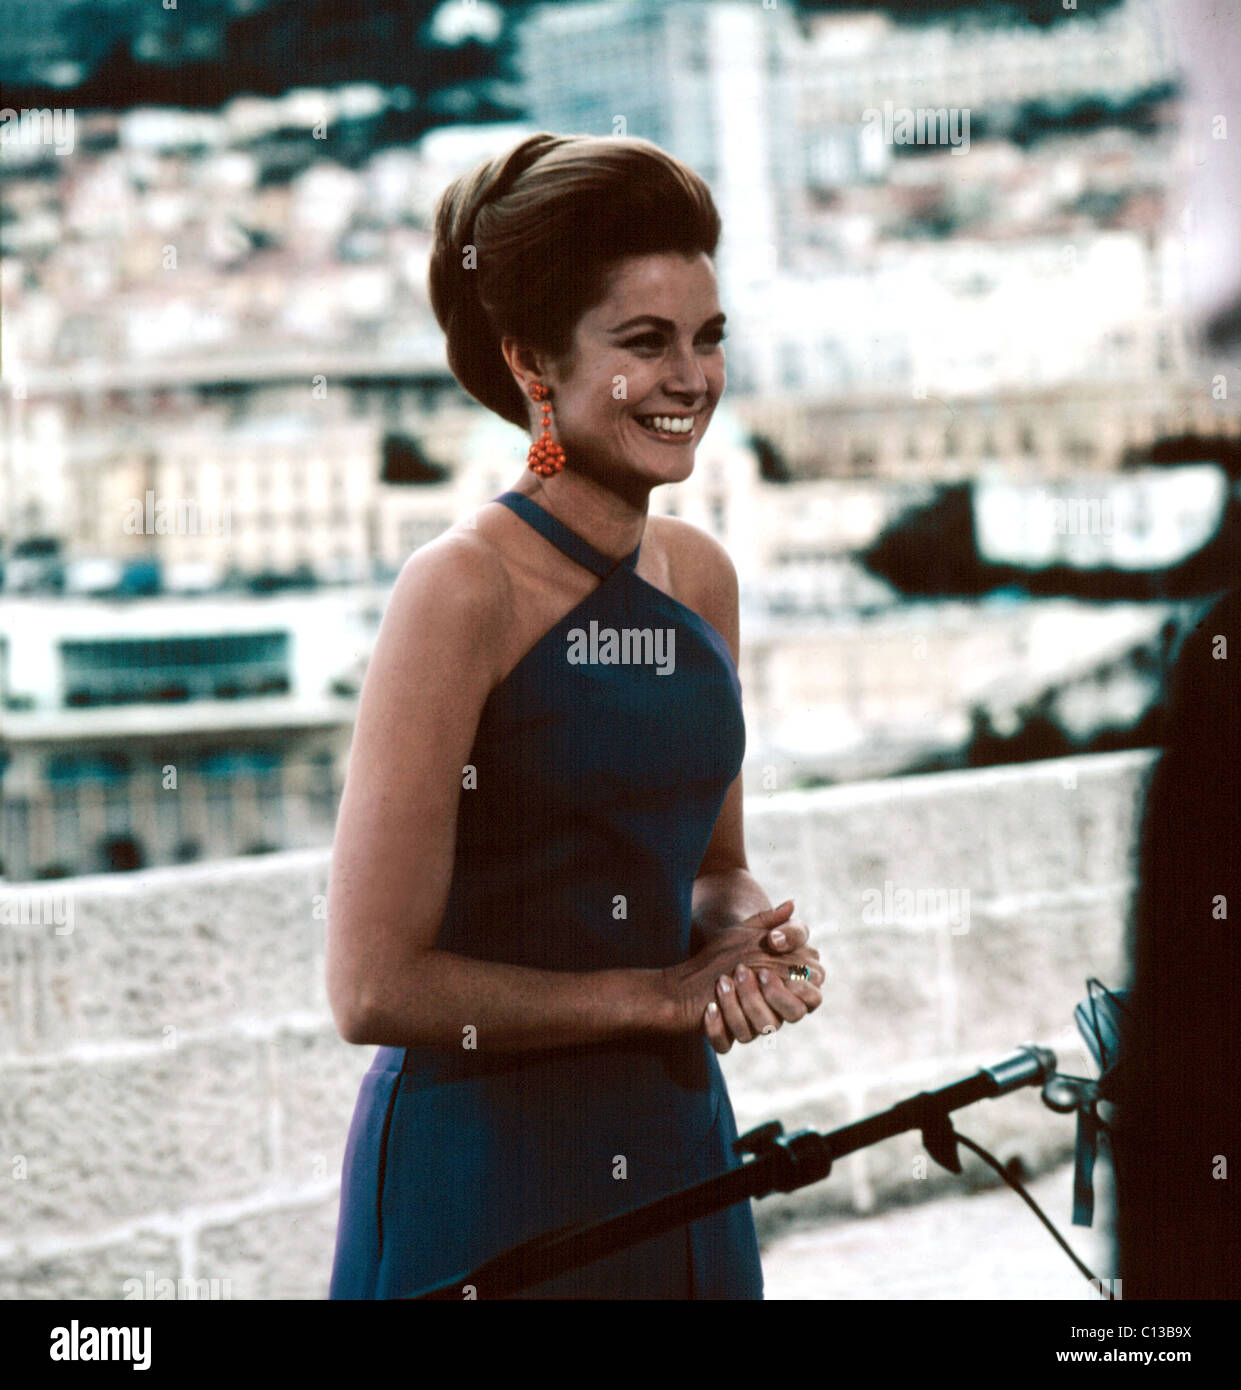 La princesse Grace Kelly de Monaco dans les années 60. Banque D'Images